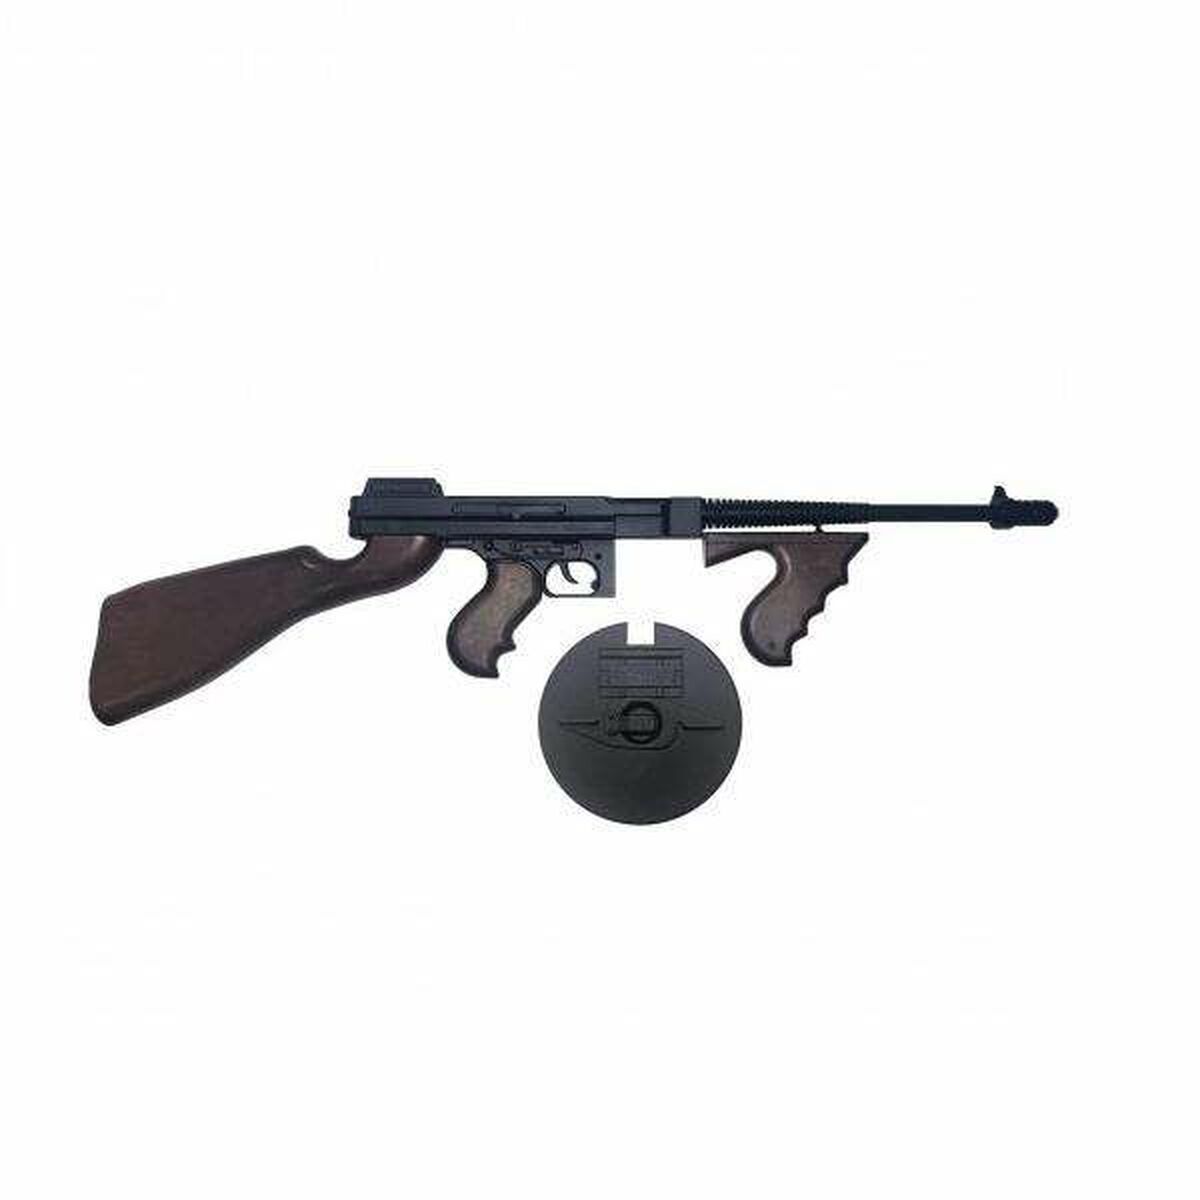 Maskinpistol Militär Gonher Gangster 26 x 5,5 x 76 cm-Leksaker och spel, Fancy klänning och accessoarer-Gonher-peaceofhome.se